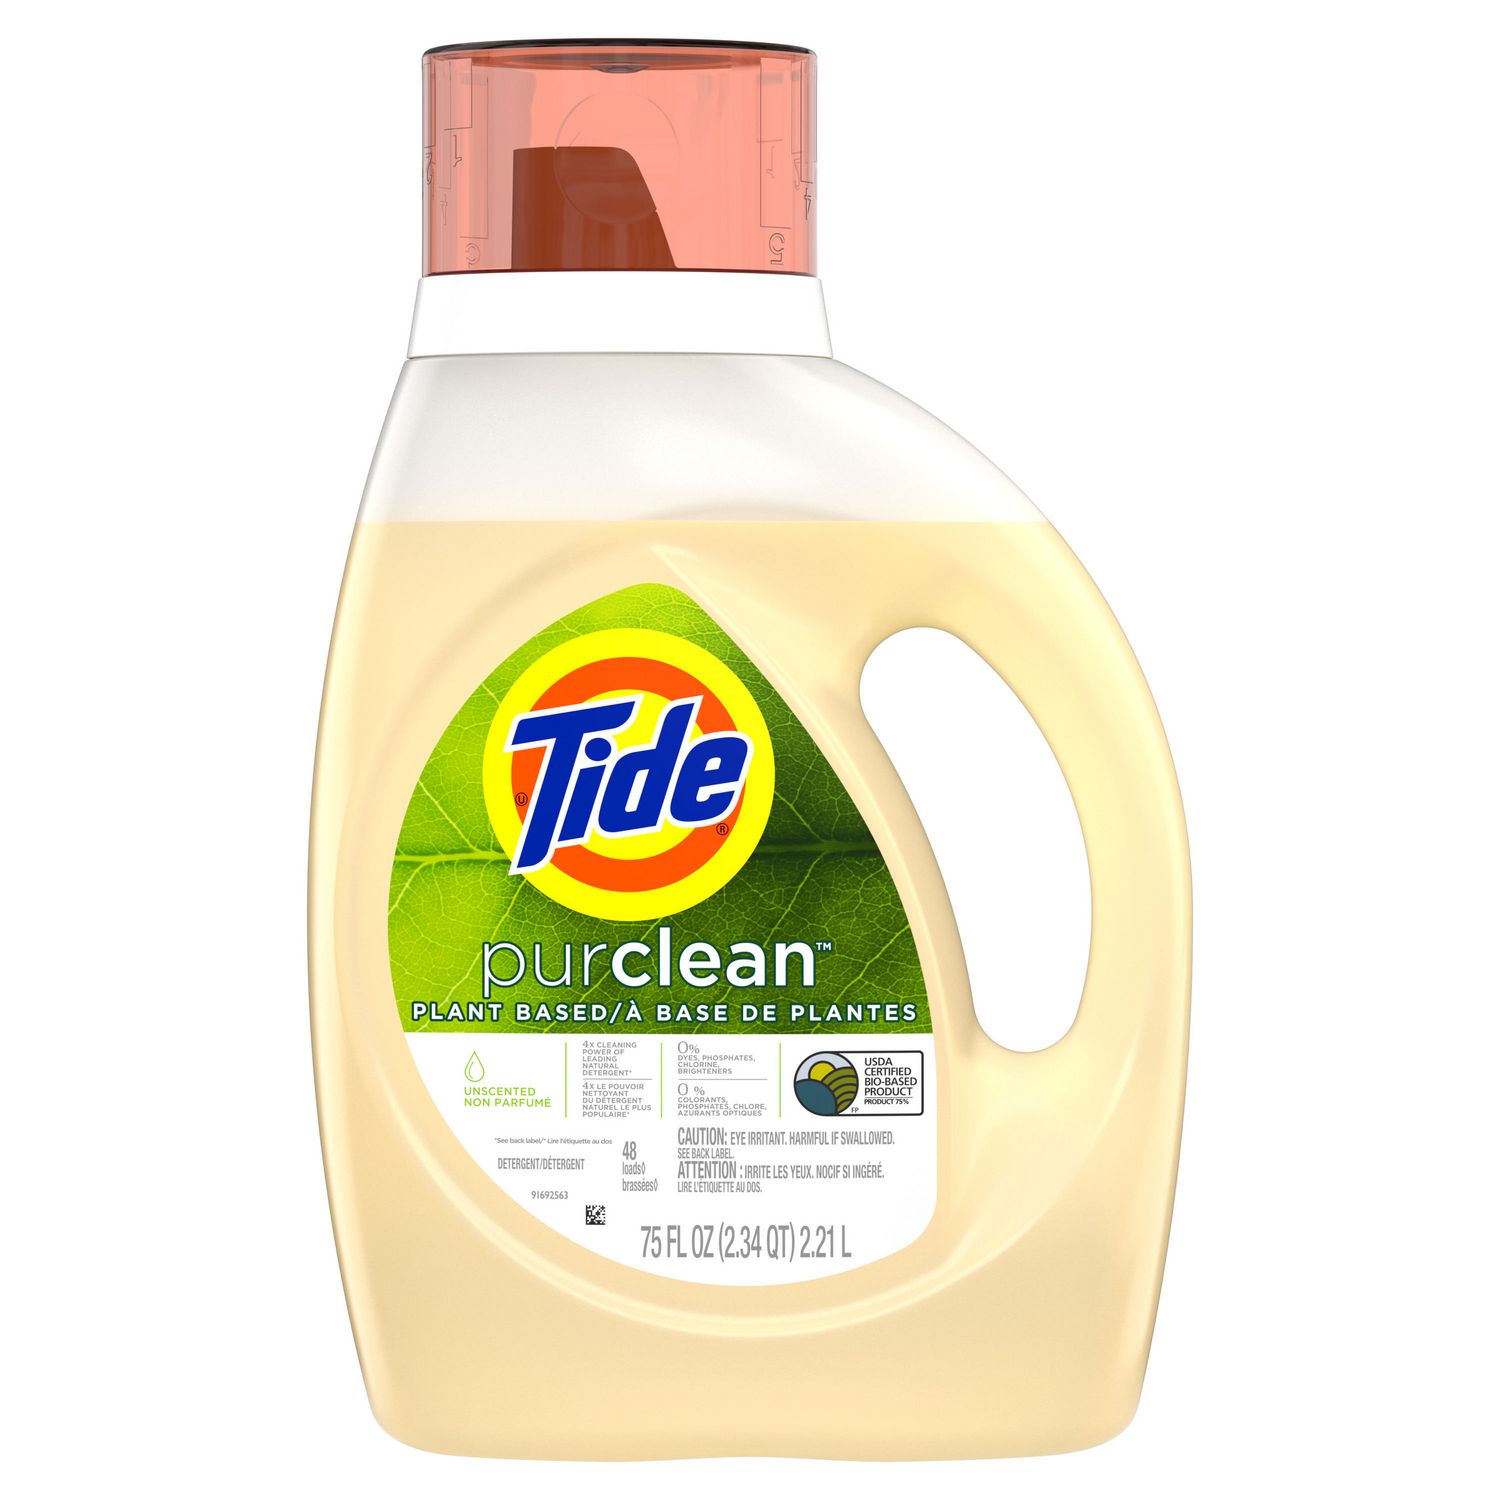 liquid detergent uses